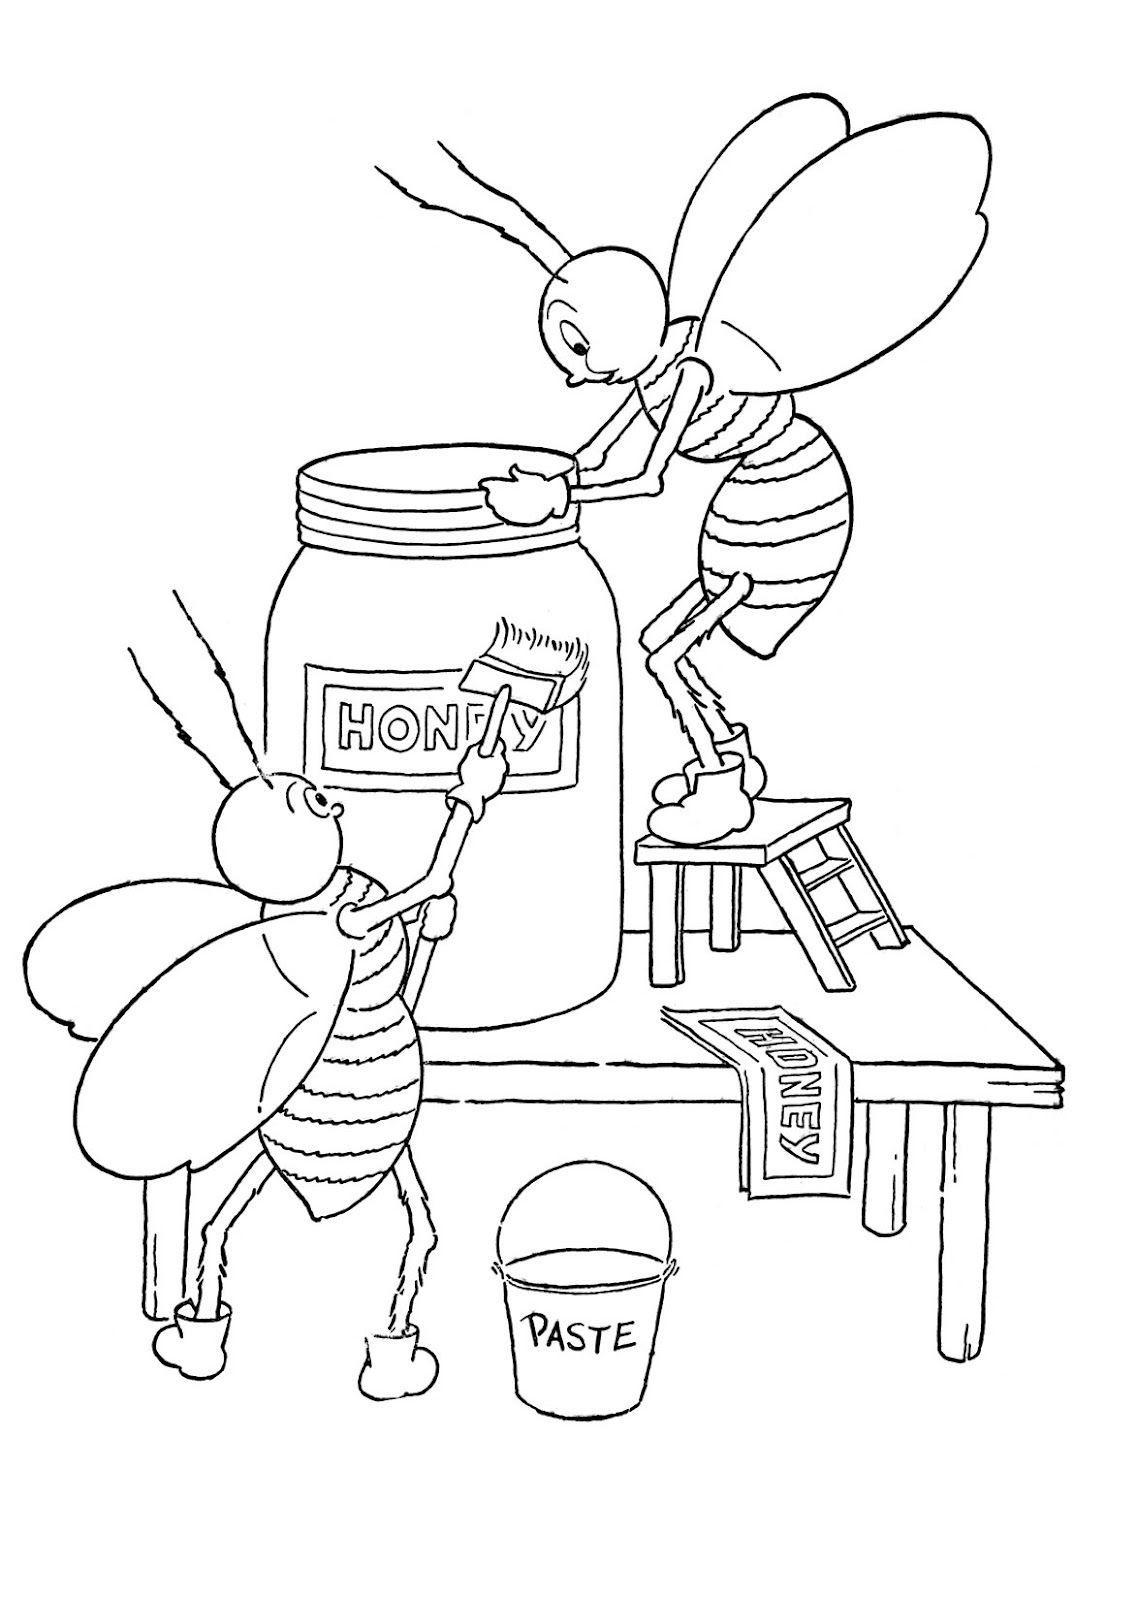 Tranh tô màu cho bé chú ong đang làm việc trang trí hũ mật